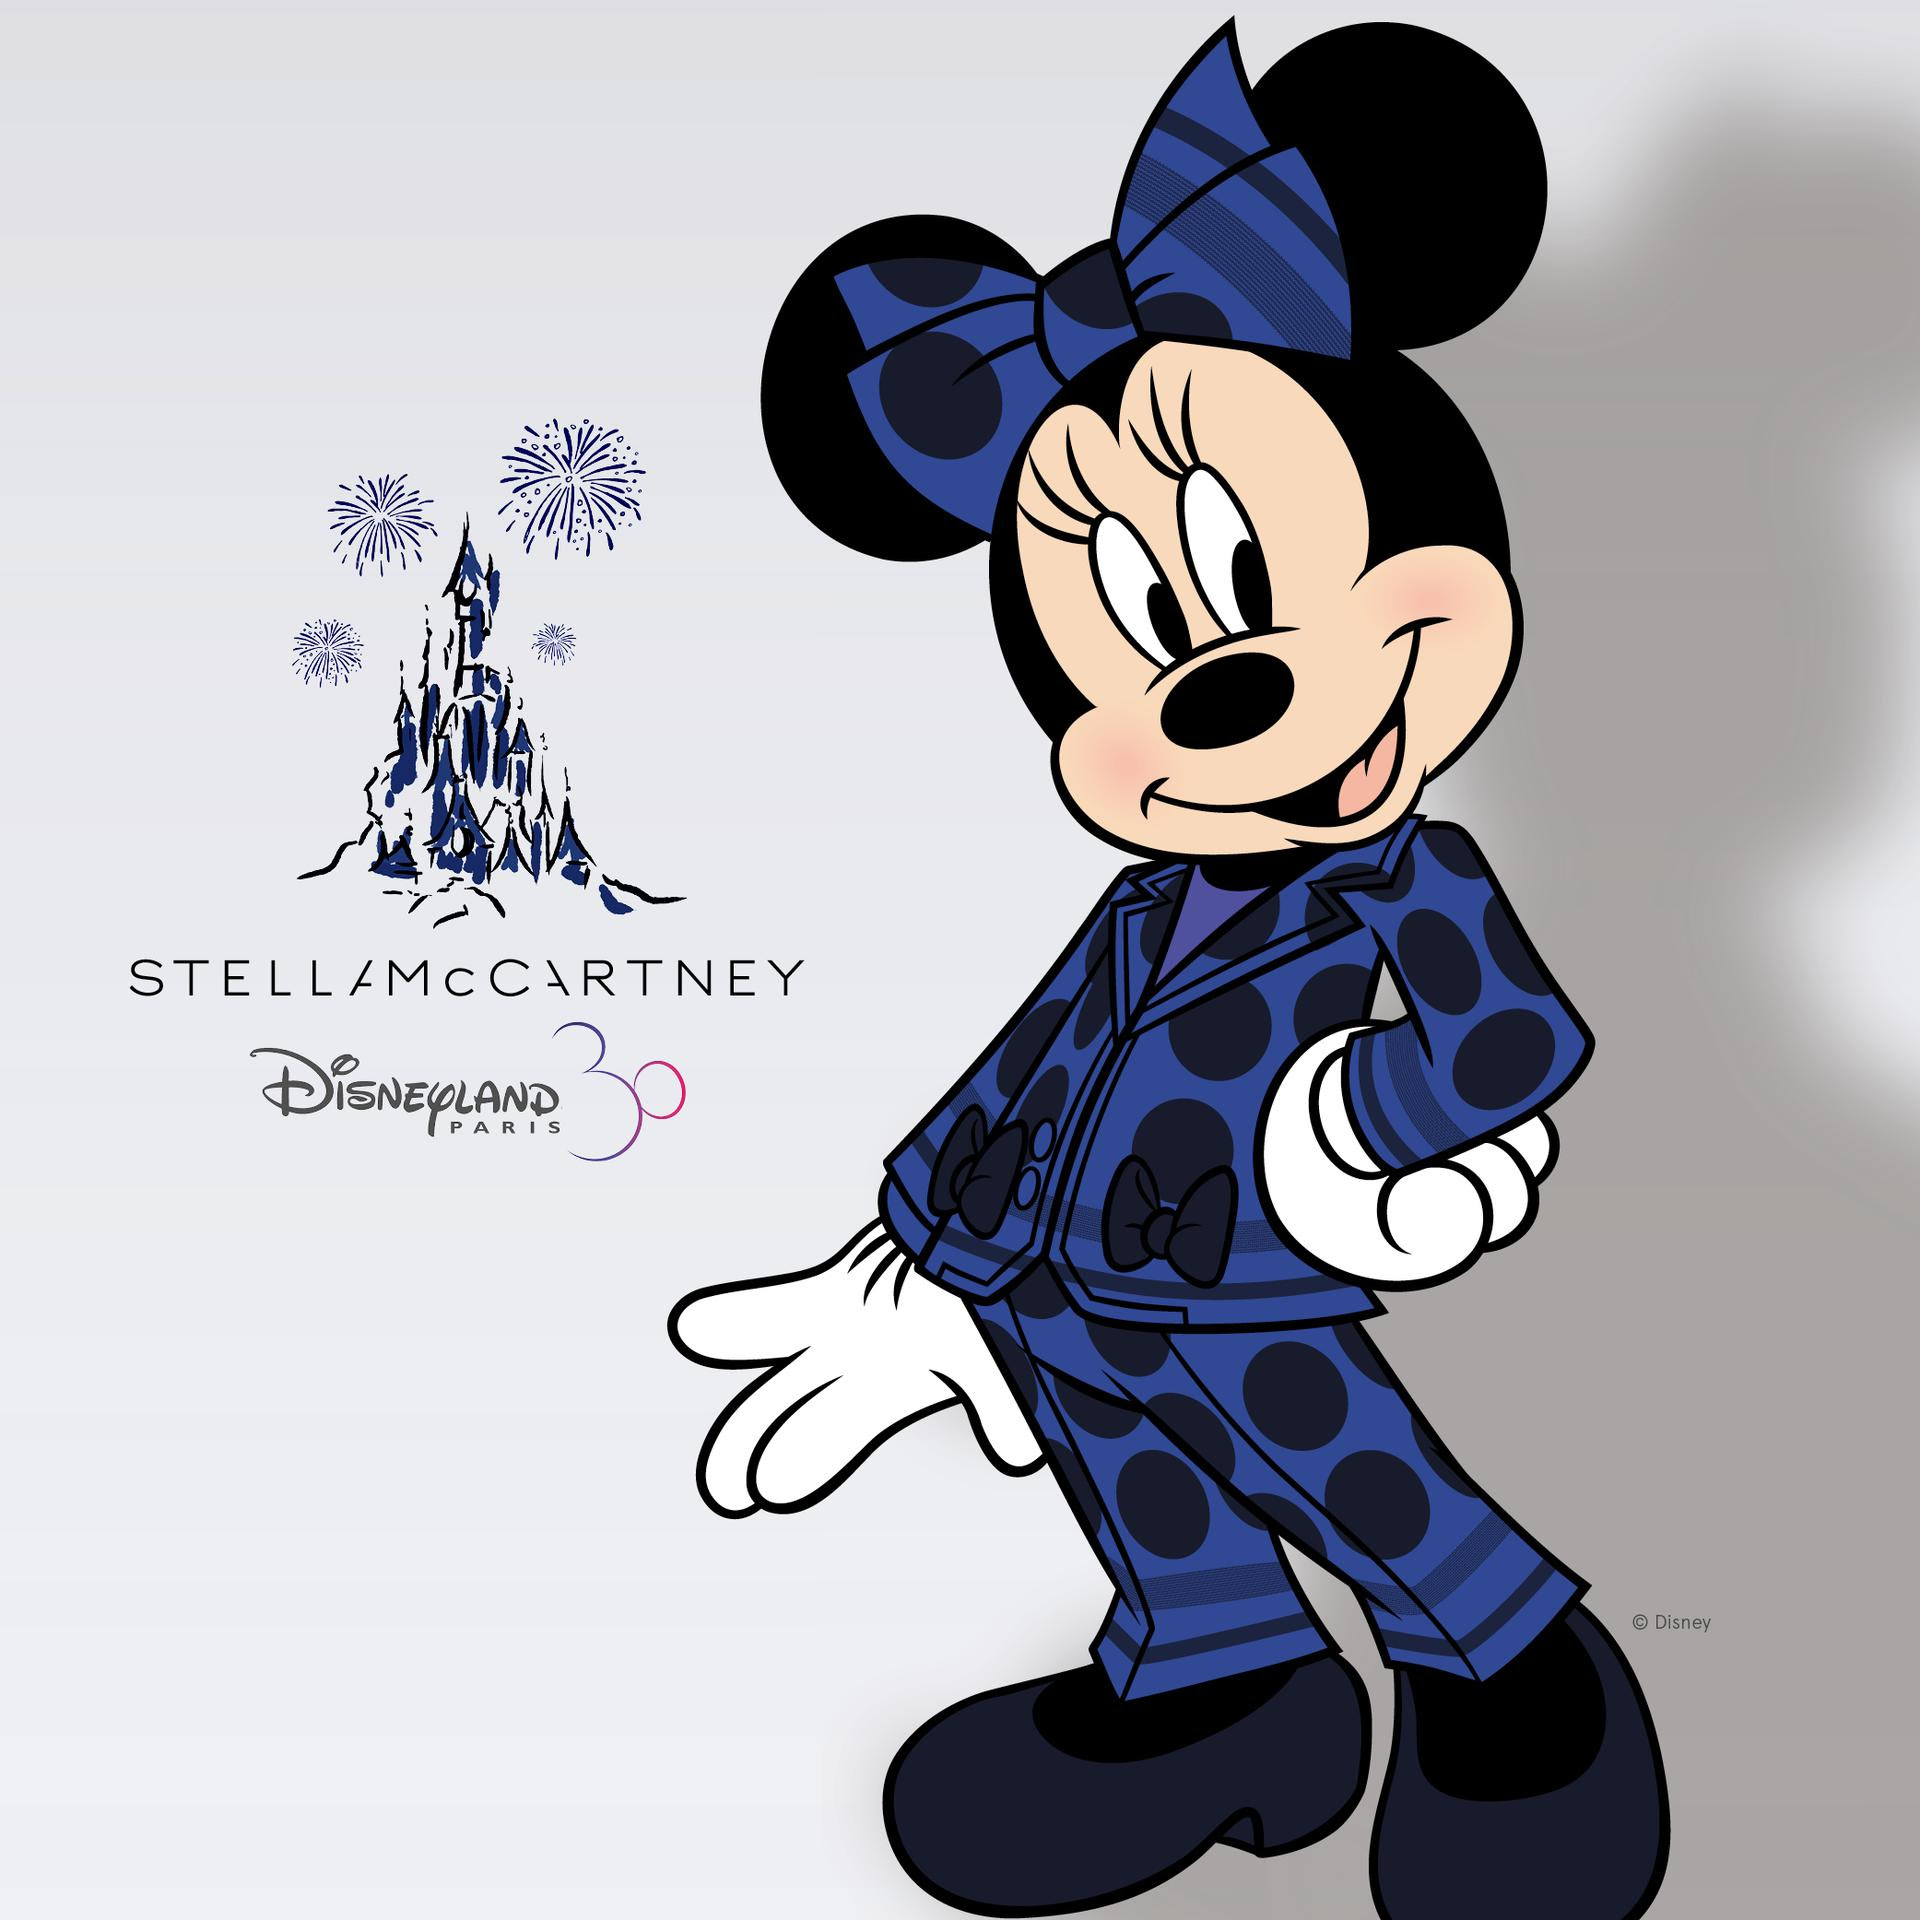 Disney promovira “razbijanje rodnih stereotipa”: Minnie umjesto haljine sada nosi odijelo